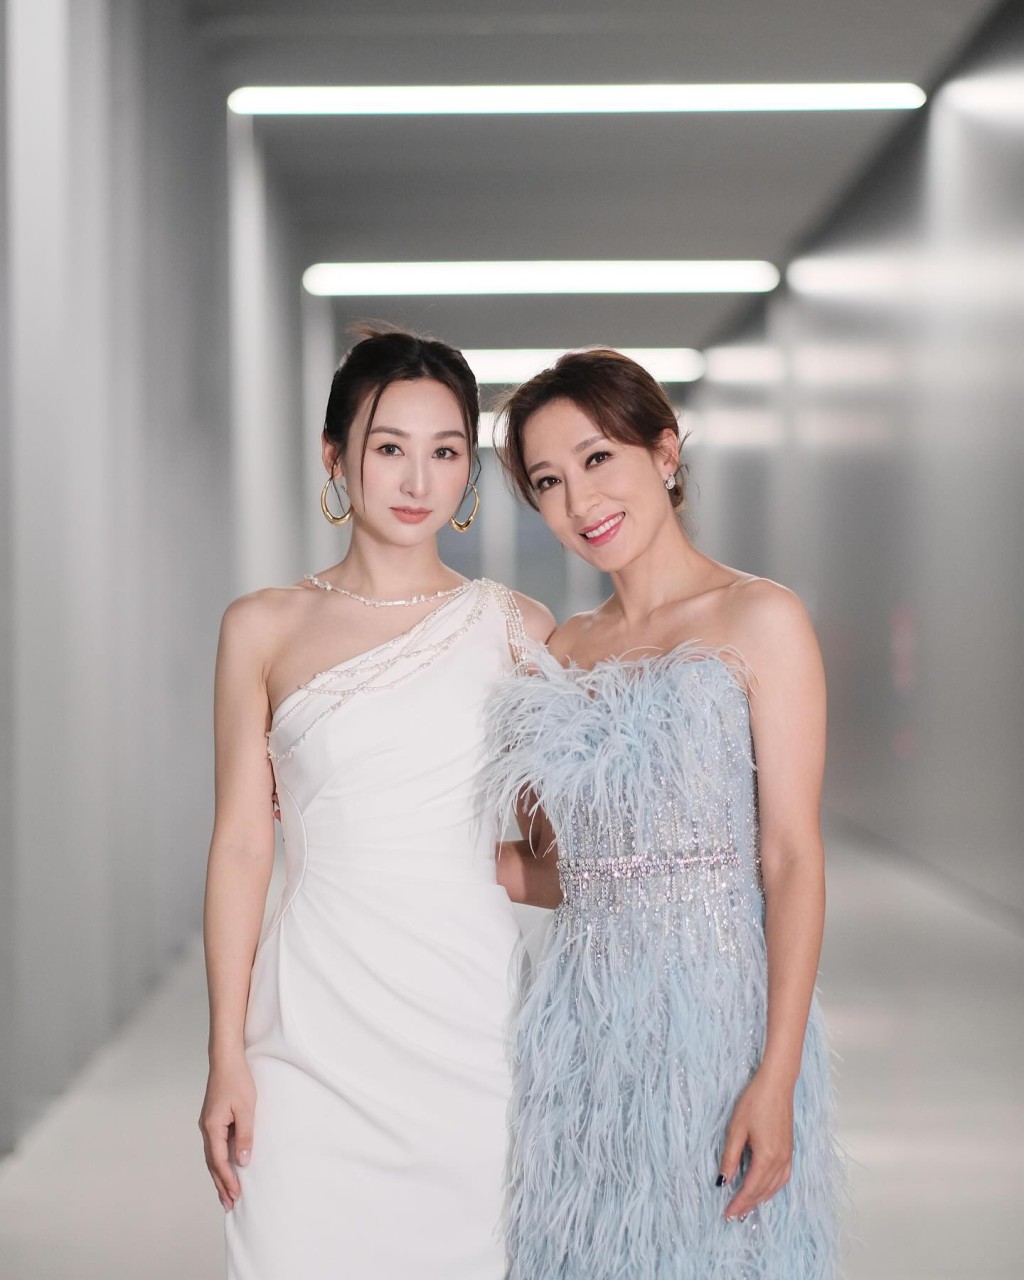 楊茜堯日前與高海寧一起現身深圳出席品牌婚紗活動。